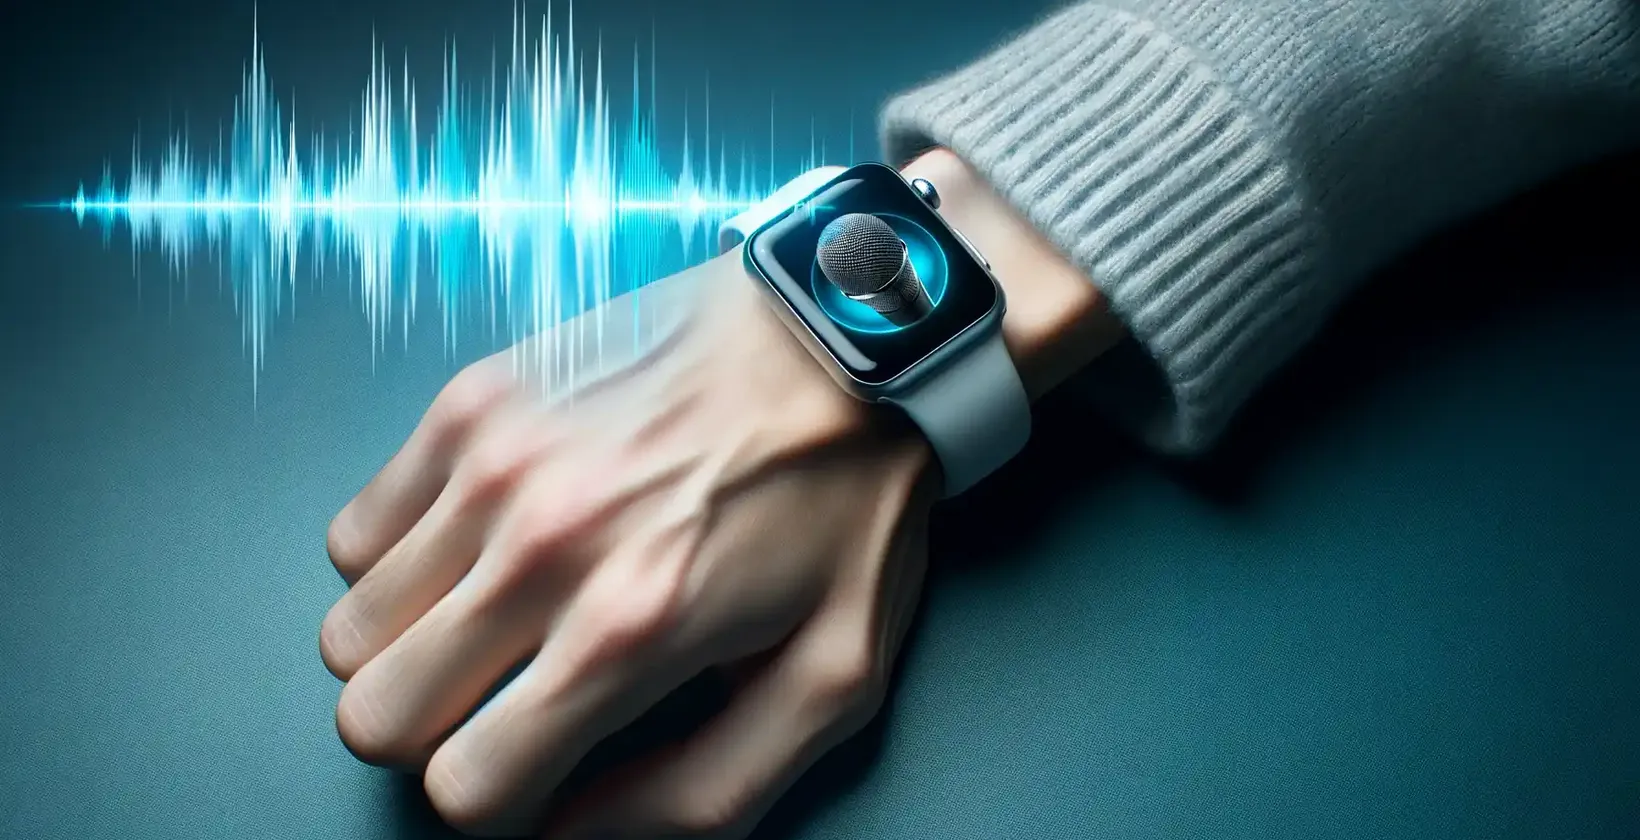 Cận cảnh cổ tay của một người đeo Apple Watch hiển thị biểu tượng micrô, cho biết chế độ đọc chính tả